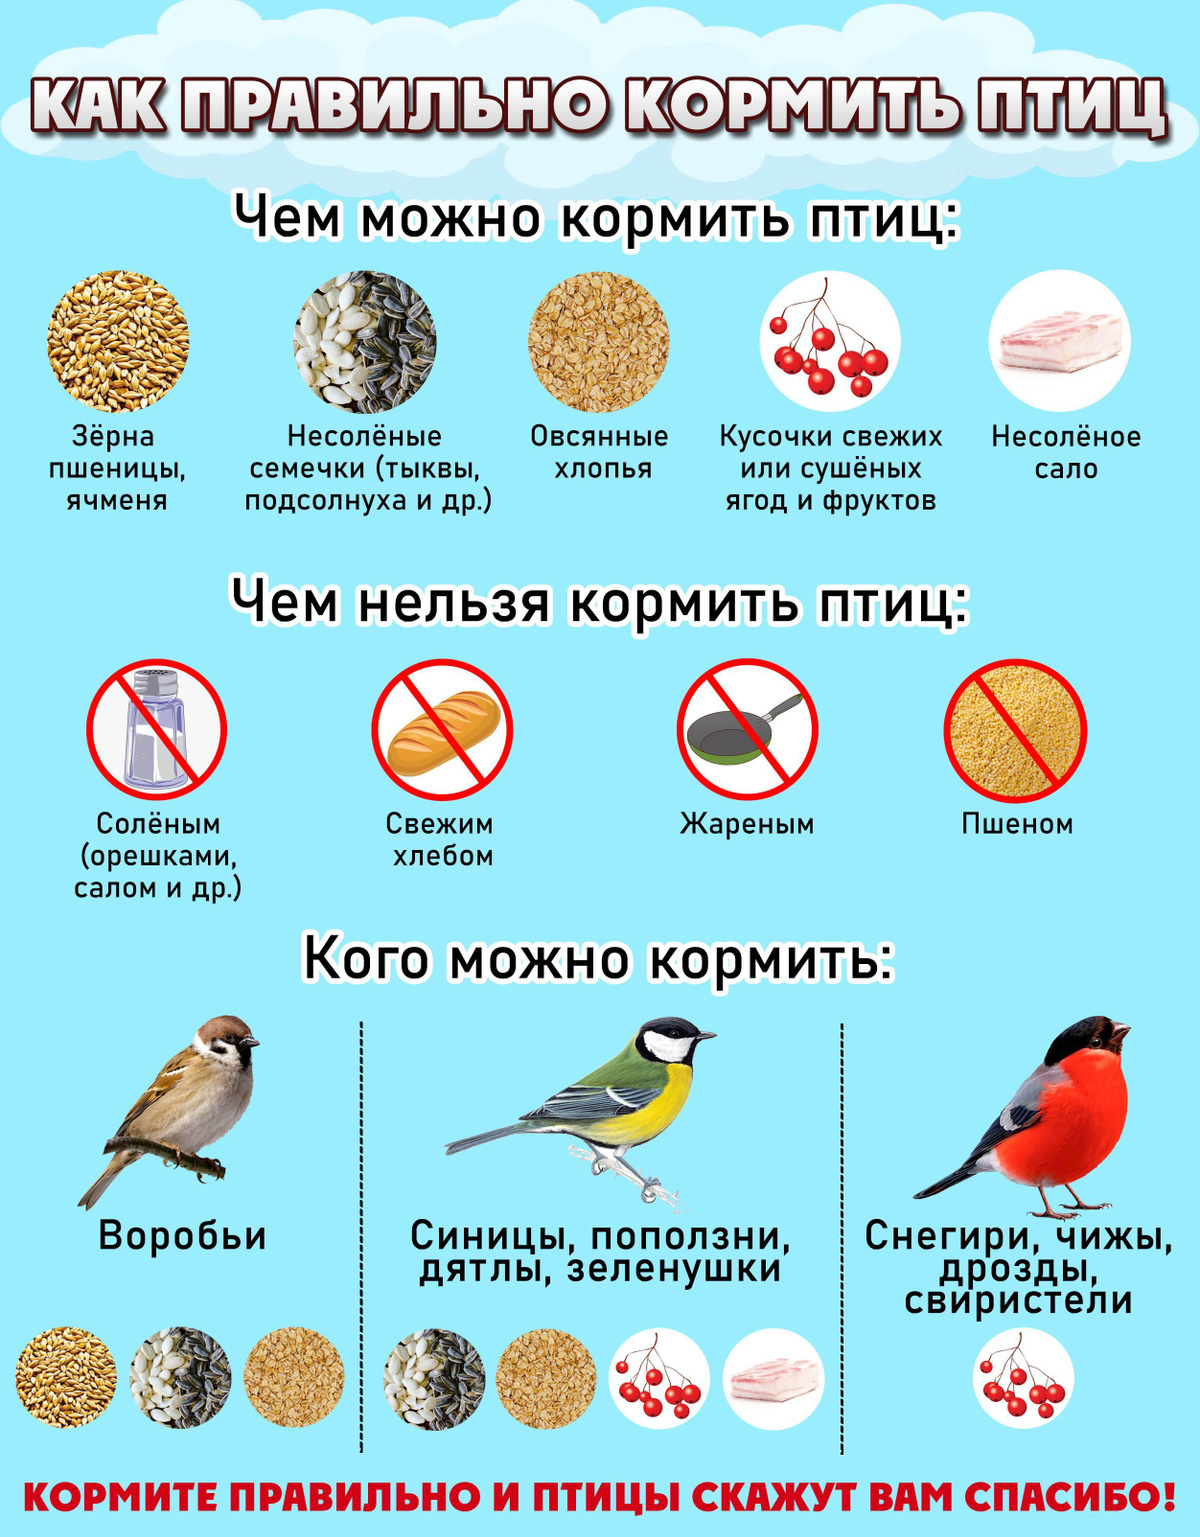 Советы по кормлению птиц летом.